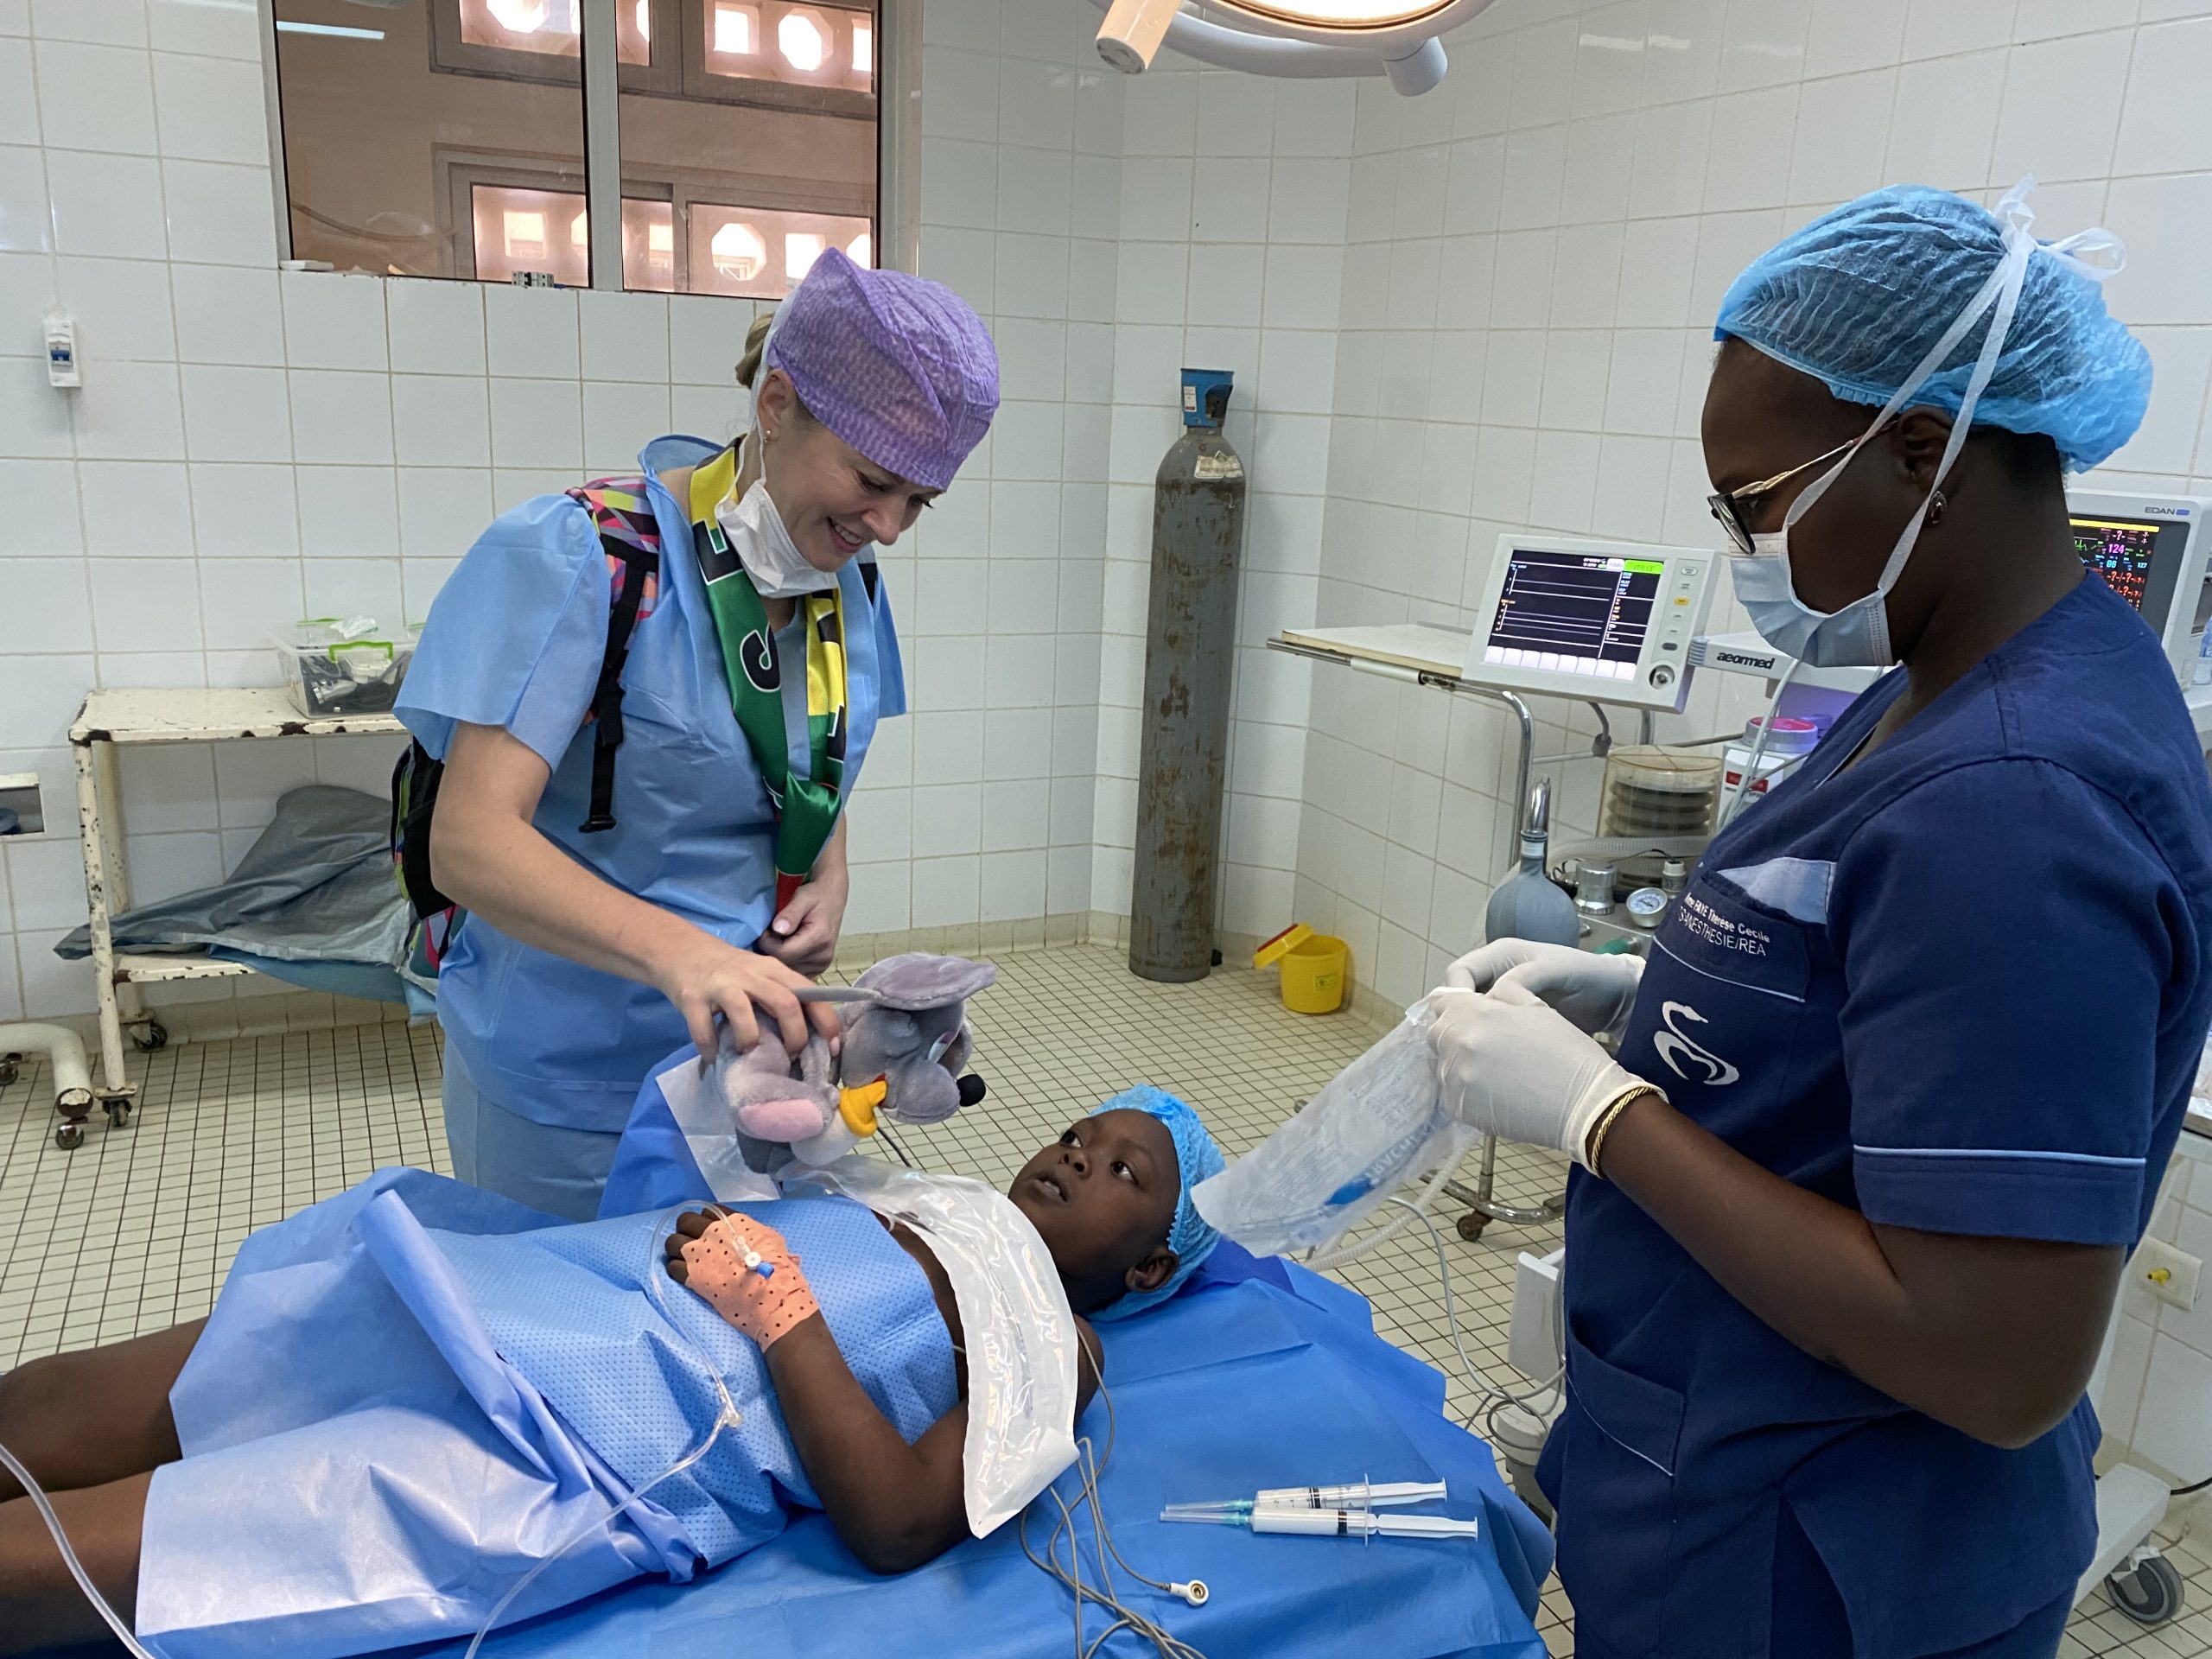  Sestra Soprová uklidňuje dětského pacienta na operačním sále před operací.